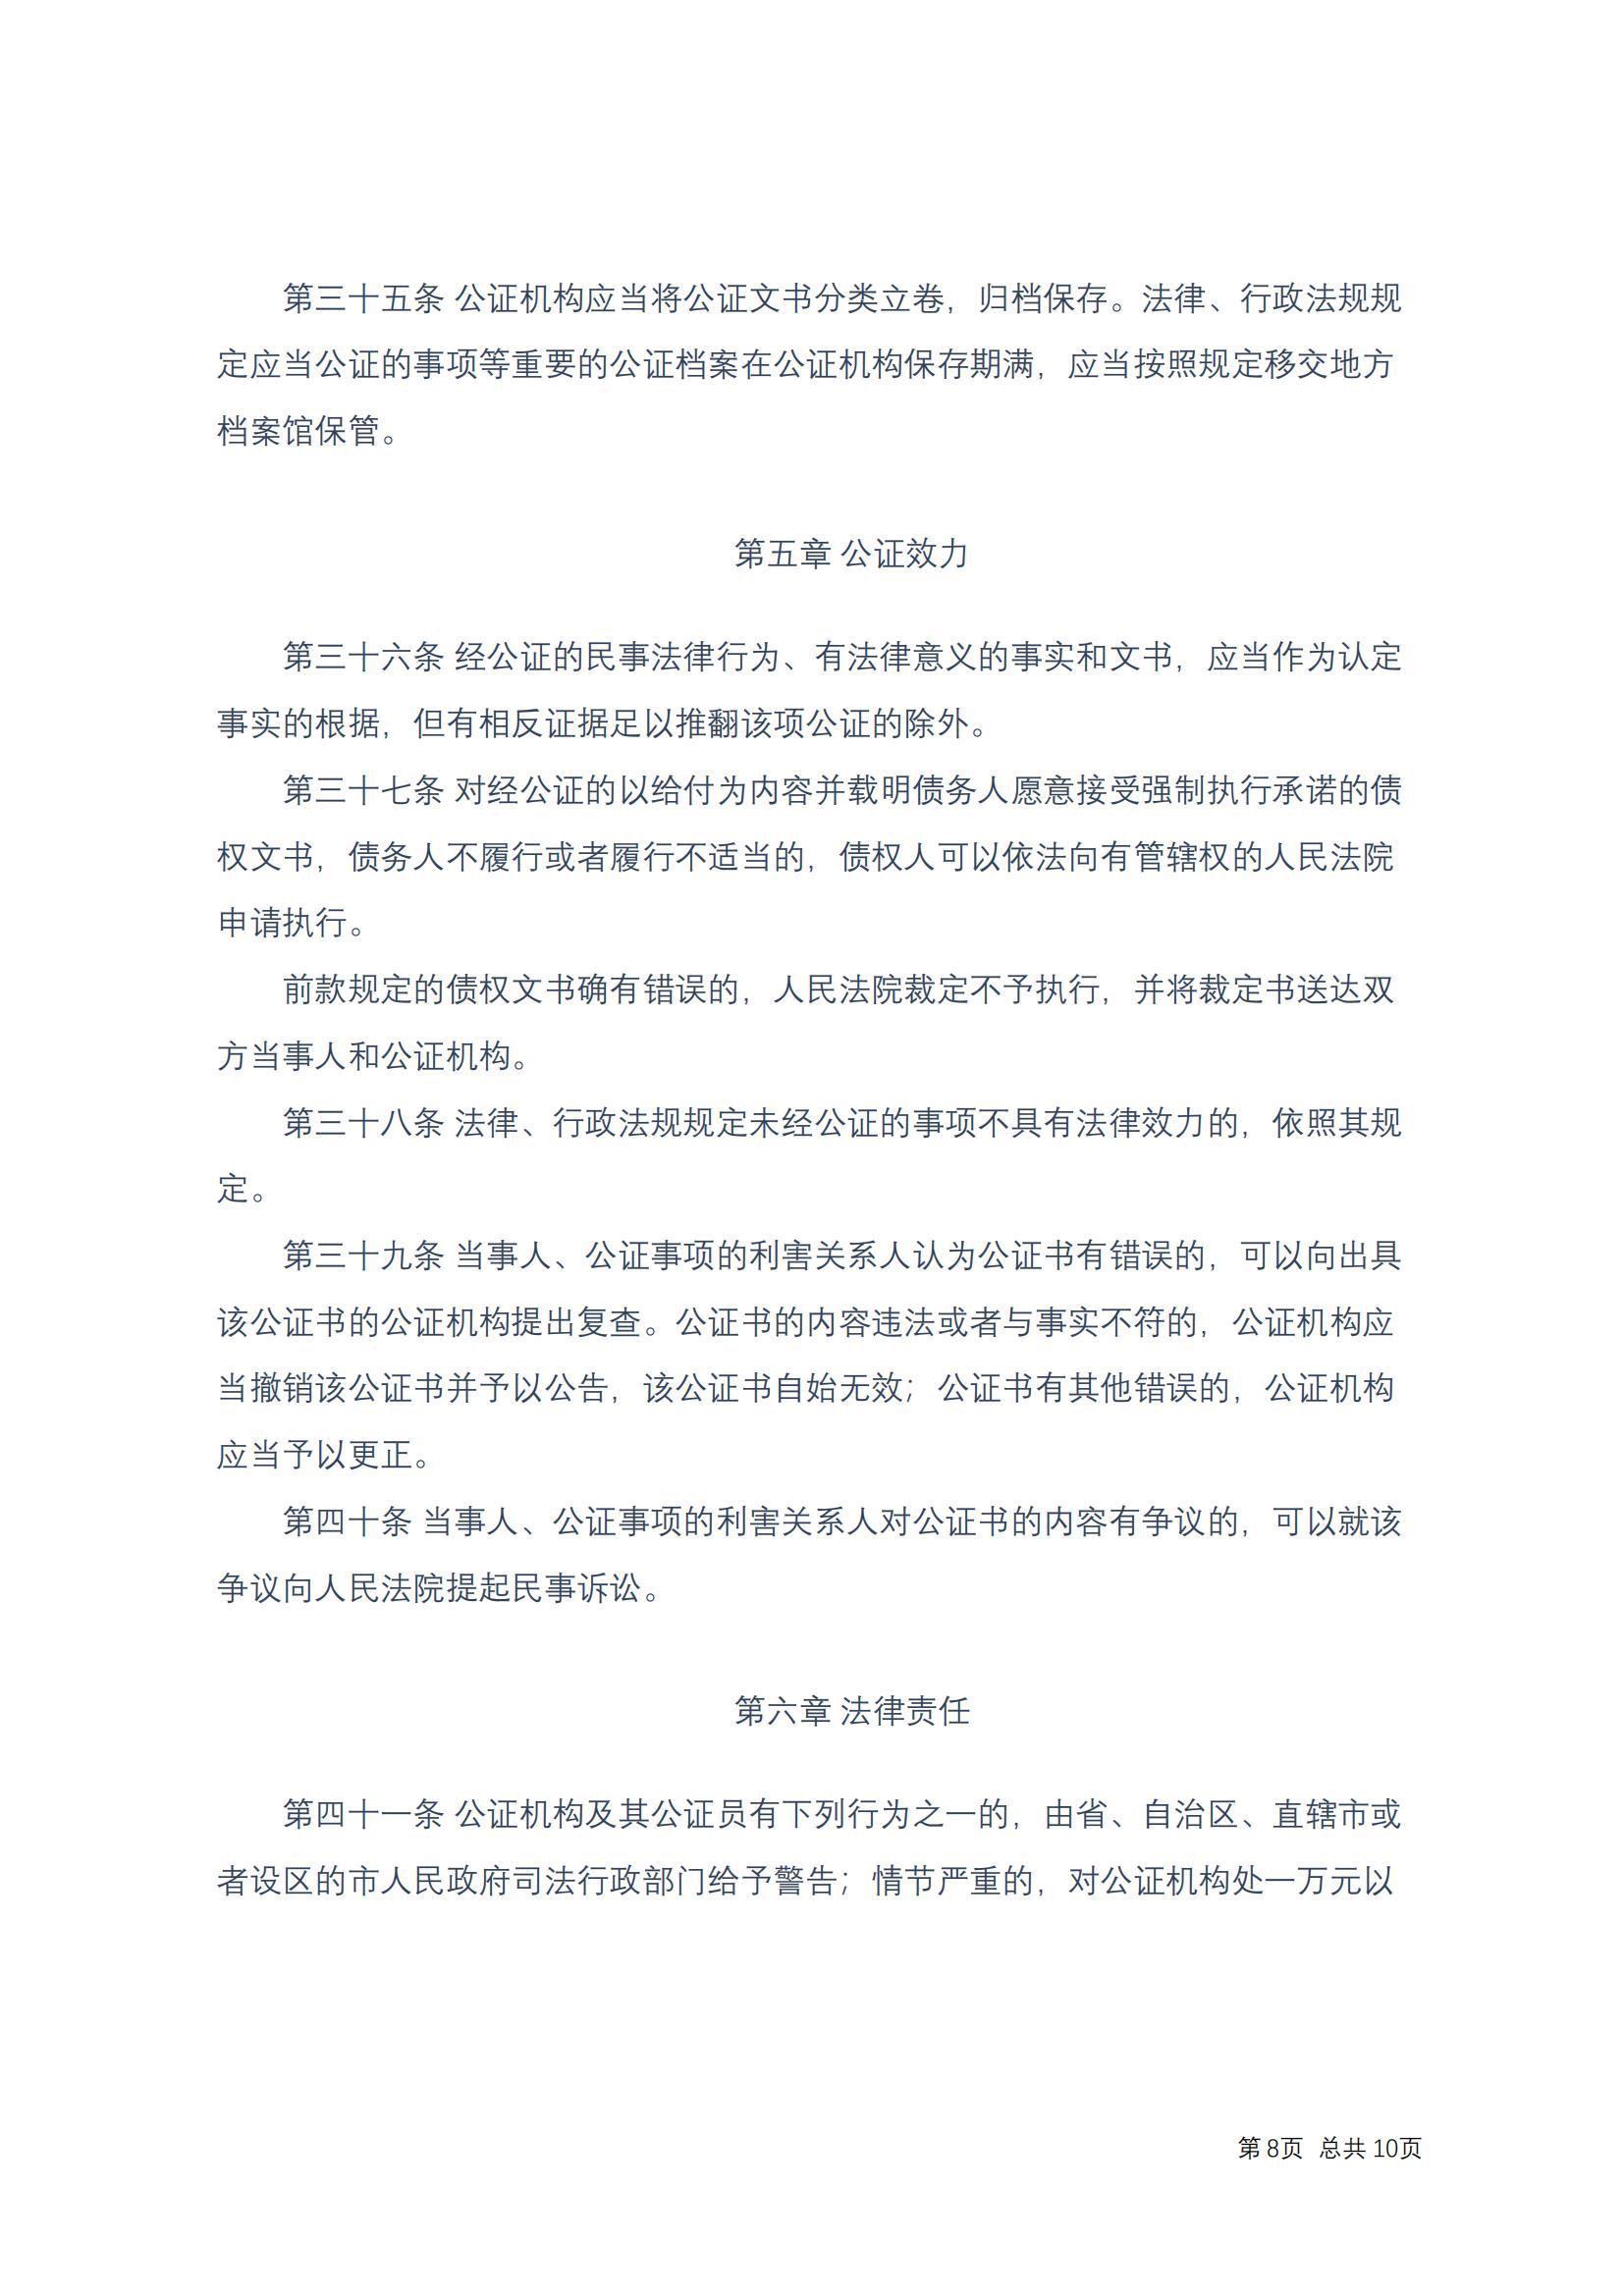 中华人民共和国公证法(2017修正)修改过_07